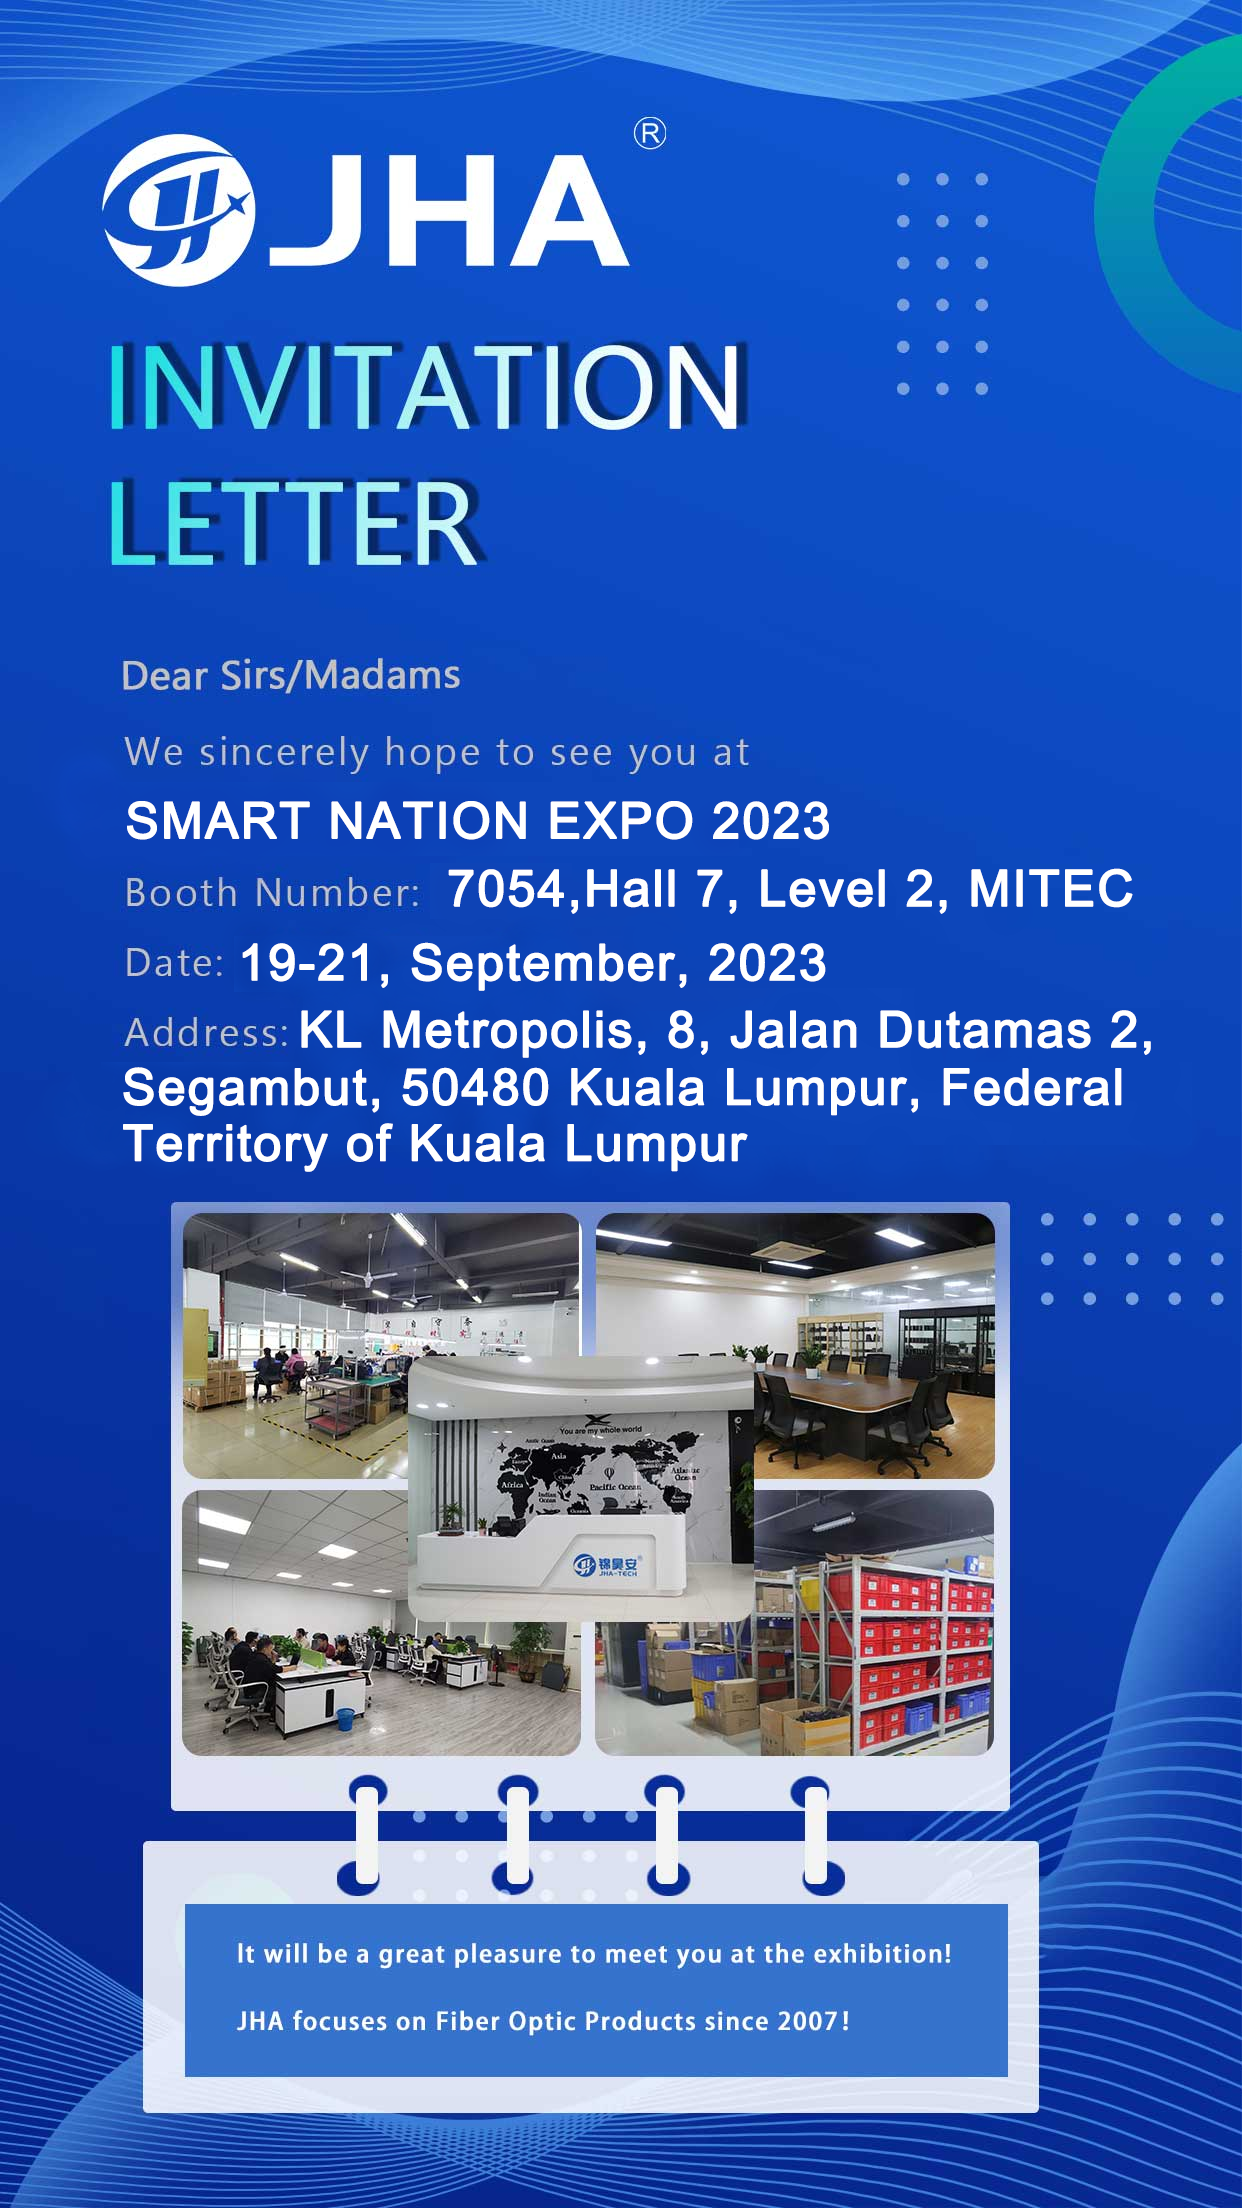 Tukutane kwenye SMART NATION EXPO 2023